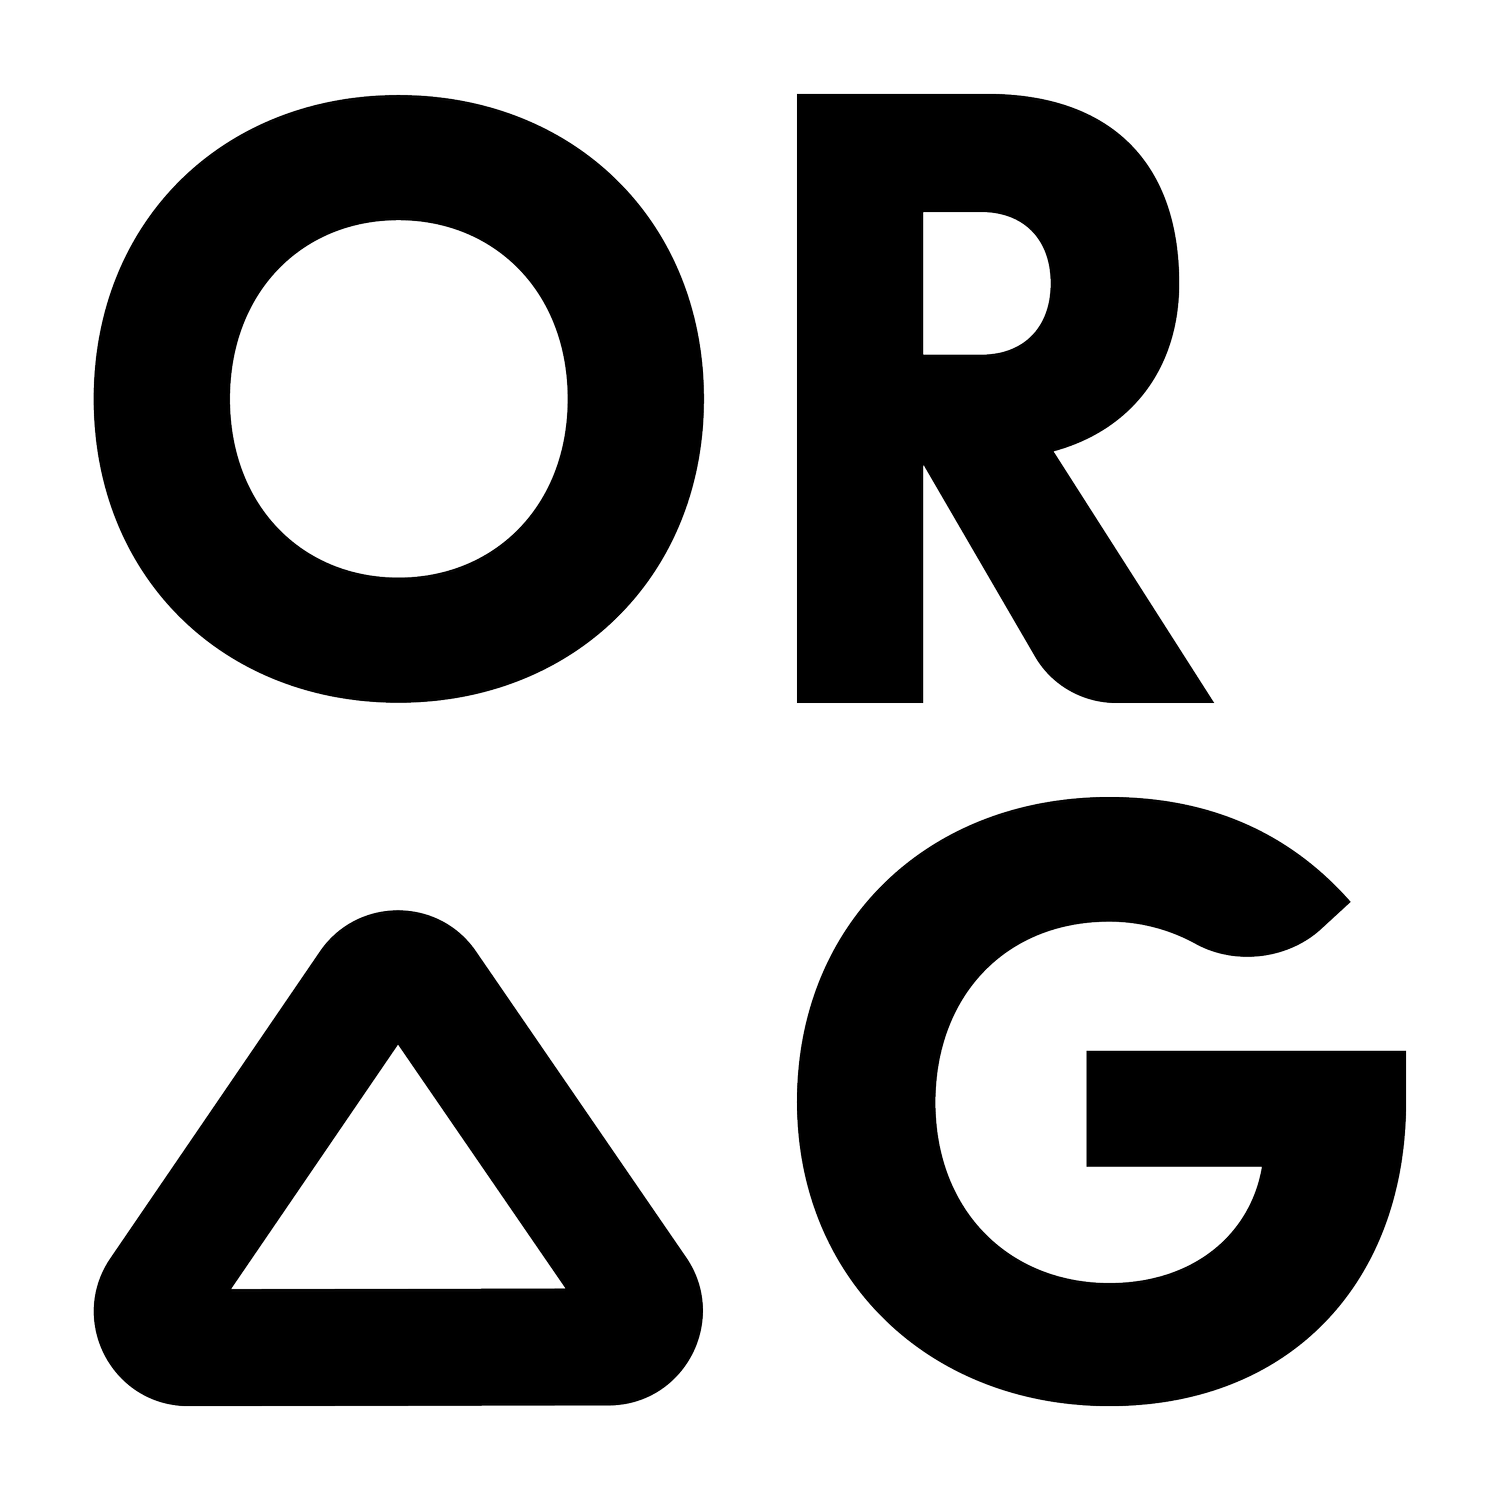 ORG Inc